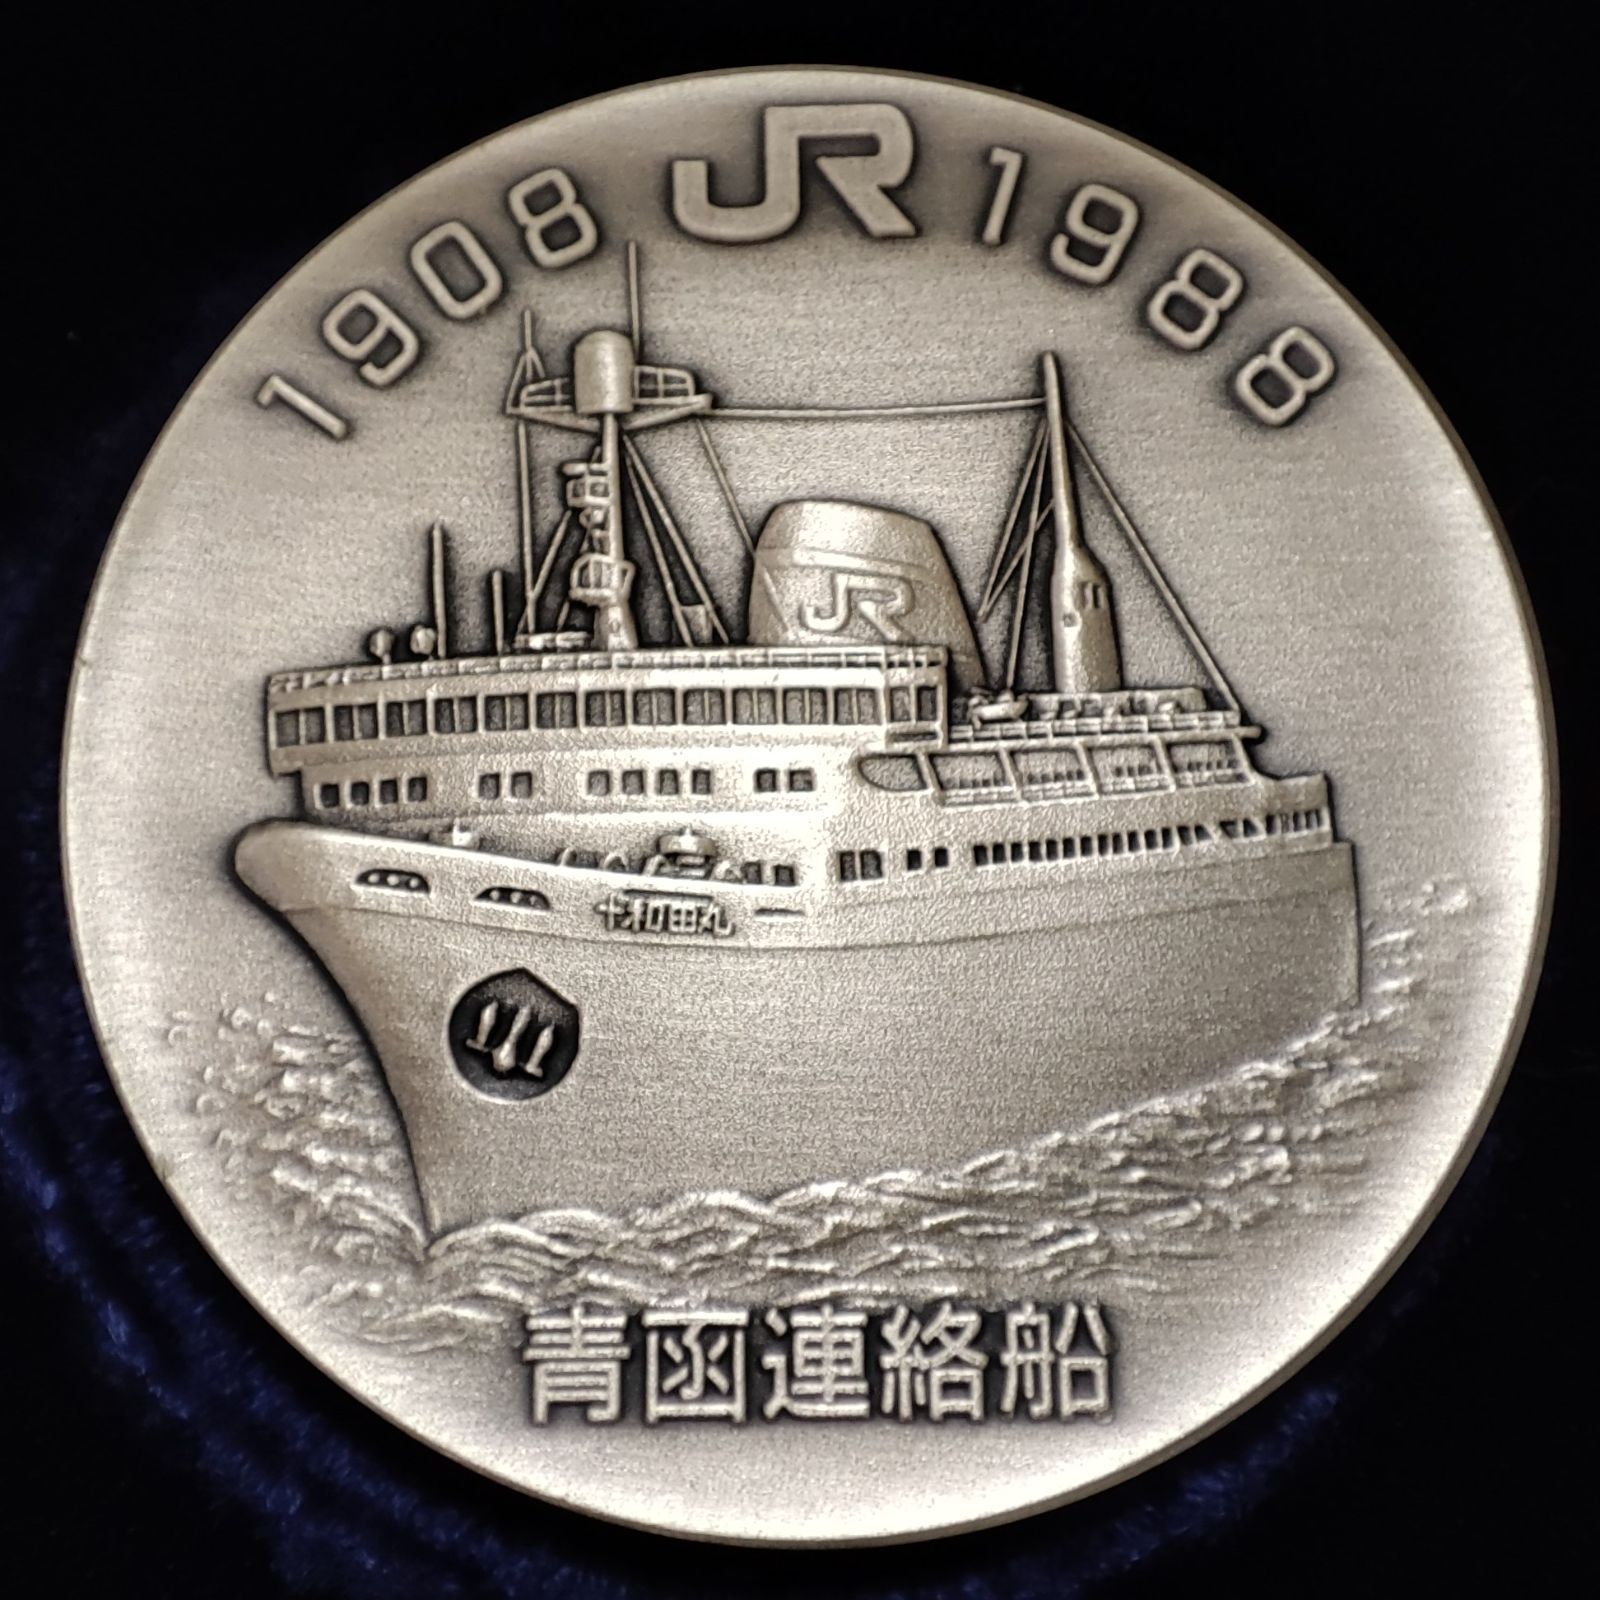 さようなら青函連絡船 公式記念メダル 純銀・純銅製 十和田丸 昭和 JR 